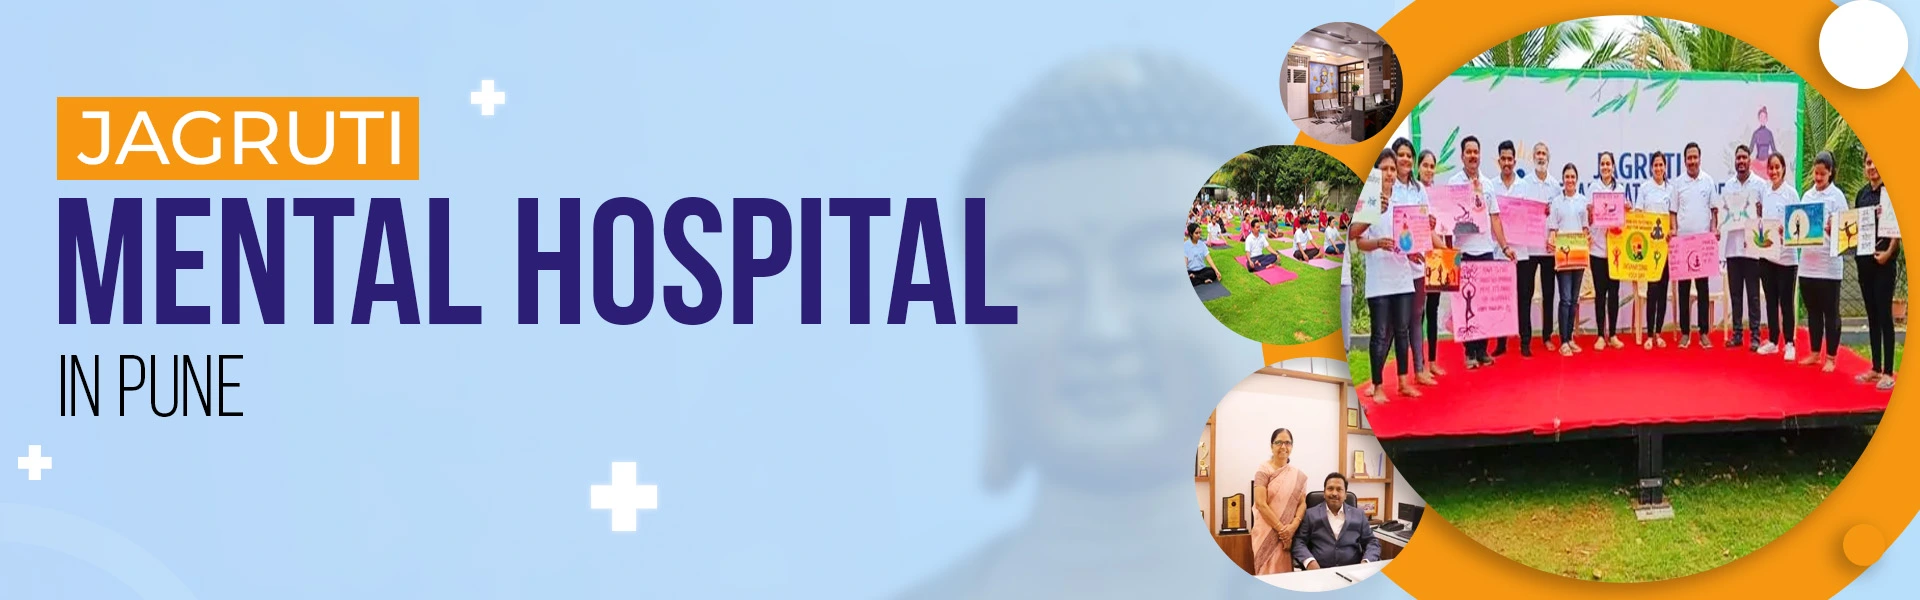 Best Psychiatric and Mental Hospital in Pune, India - Jagruti